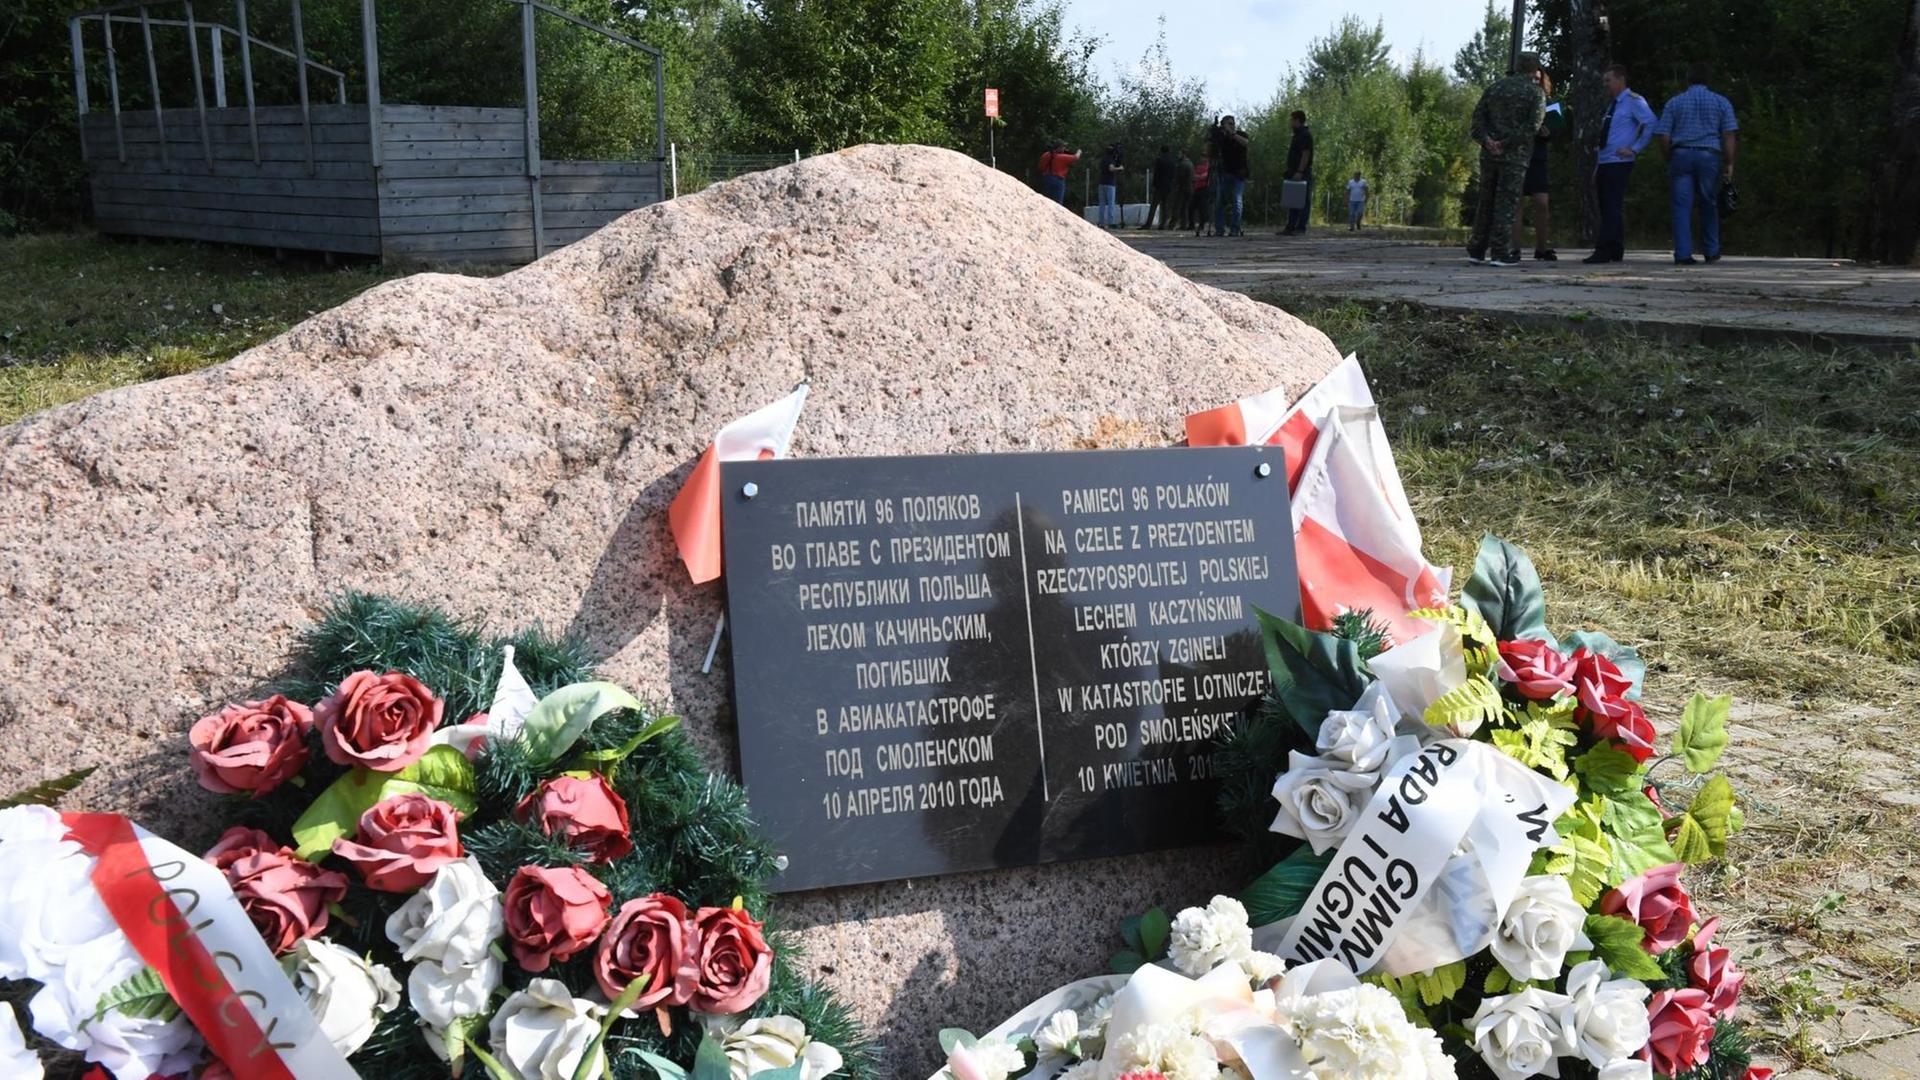 Ein Gedenkstein für die Opfer des Absturzes am Ort des Absturzes in Smolensk.